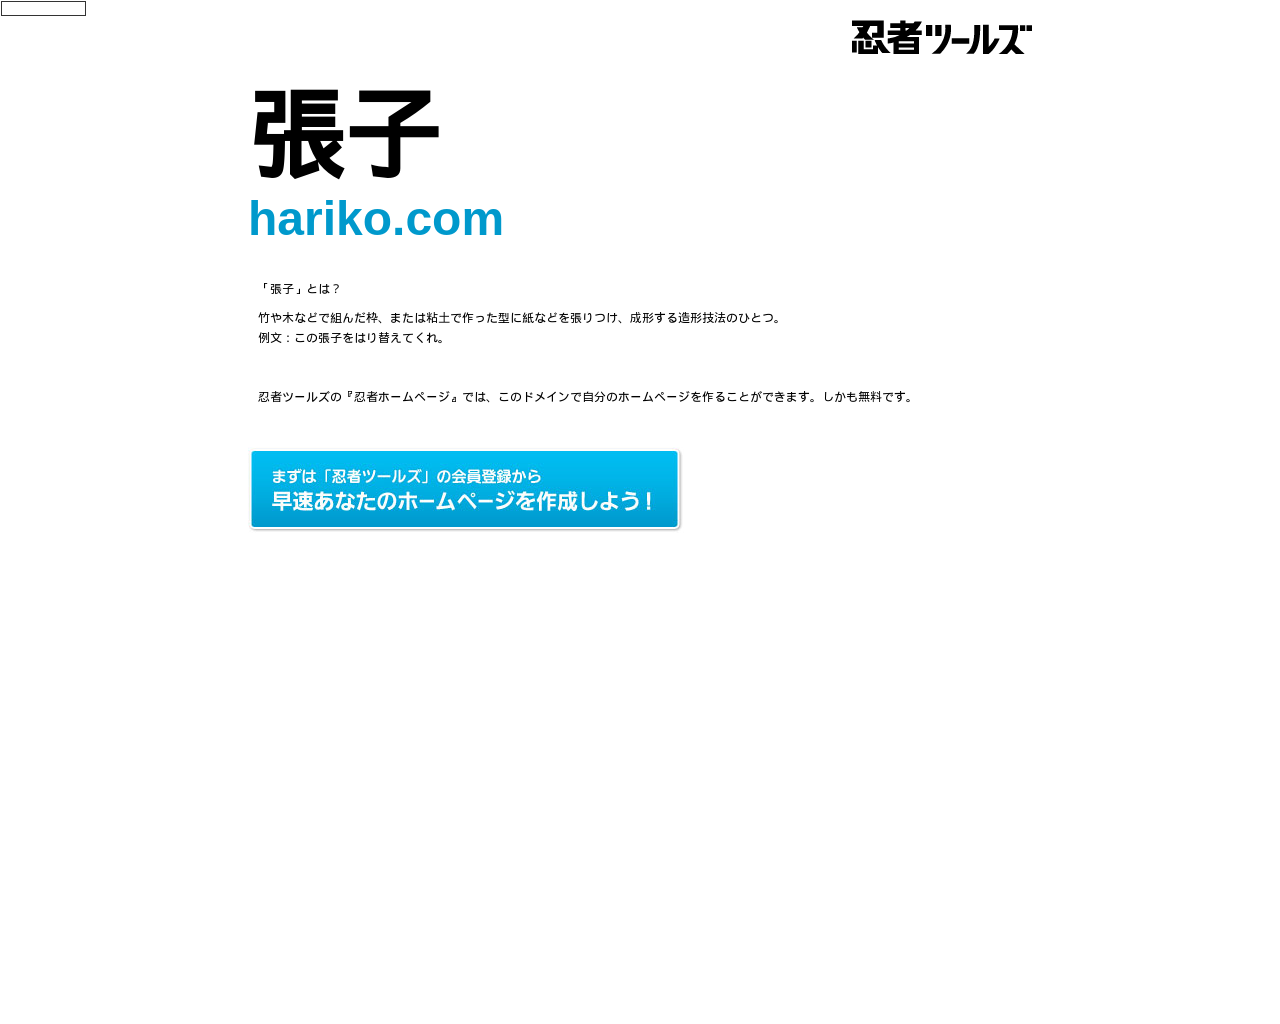 hariko.com